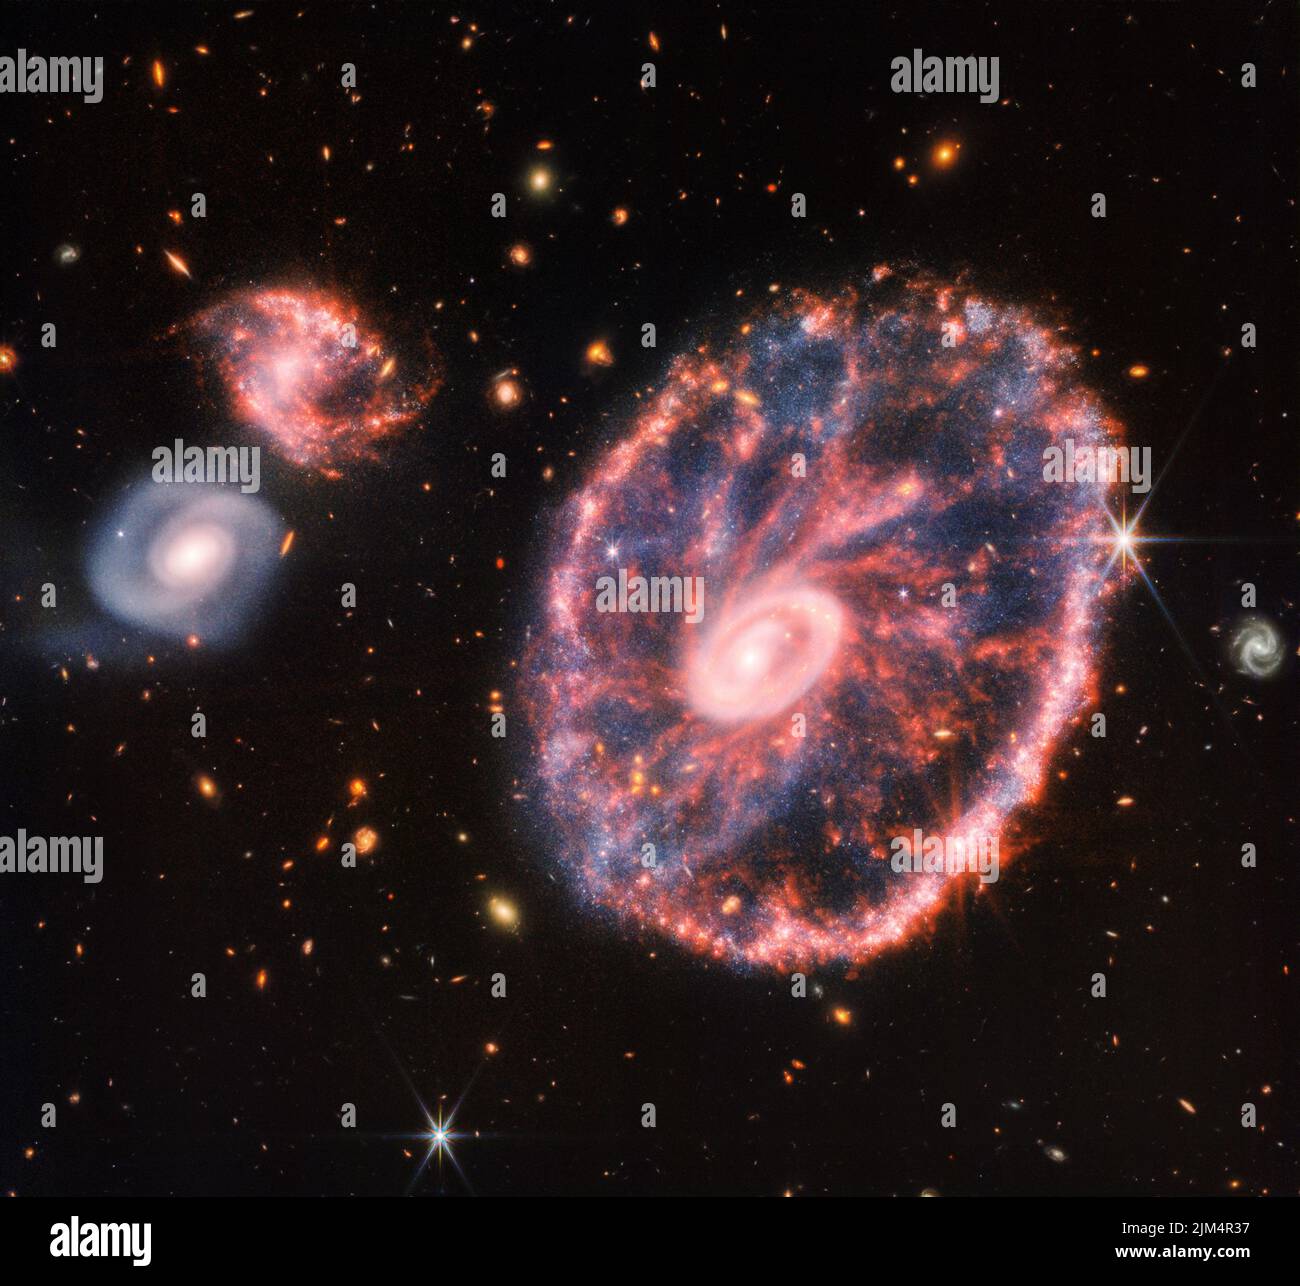 Das James Webb Space Telescope der NASA hat in das Chaos der Cartwheel Galaxy gegutet und neue Details über die Sternentstehung und das zentrale Schwarze Loch der Galaxie enthüllt. Webbs starker Infrarotblick produzierte dieses detaillierte Bild, das am 02. August 2022 veröffentlicht wurde, von der Cartwheel und zwei kleineren Begleitschalaxien vor dem Hintergrund vieler anderer Galaxien. Dieses Bild bietet eine neue Ansicht, wie sich die Cartwheel Galaxy über Milliarden von Jahren verändert hat. Die Cartwheel Galaxy, etwa 500 Millionen Lichtjahre entfernt in der Bildhauerkonstellation, ist ein seltener Anblick. Sein Aussehen, ähnlich wie das eines Waggons w Stockfoto